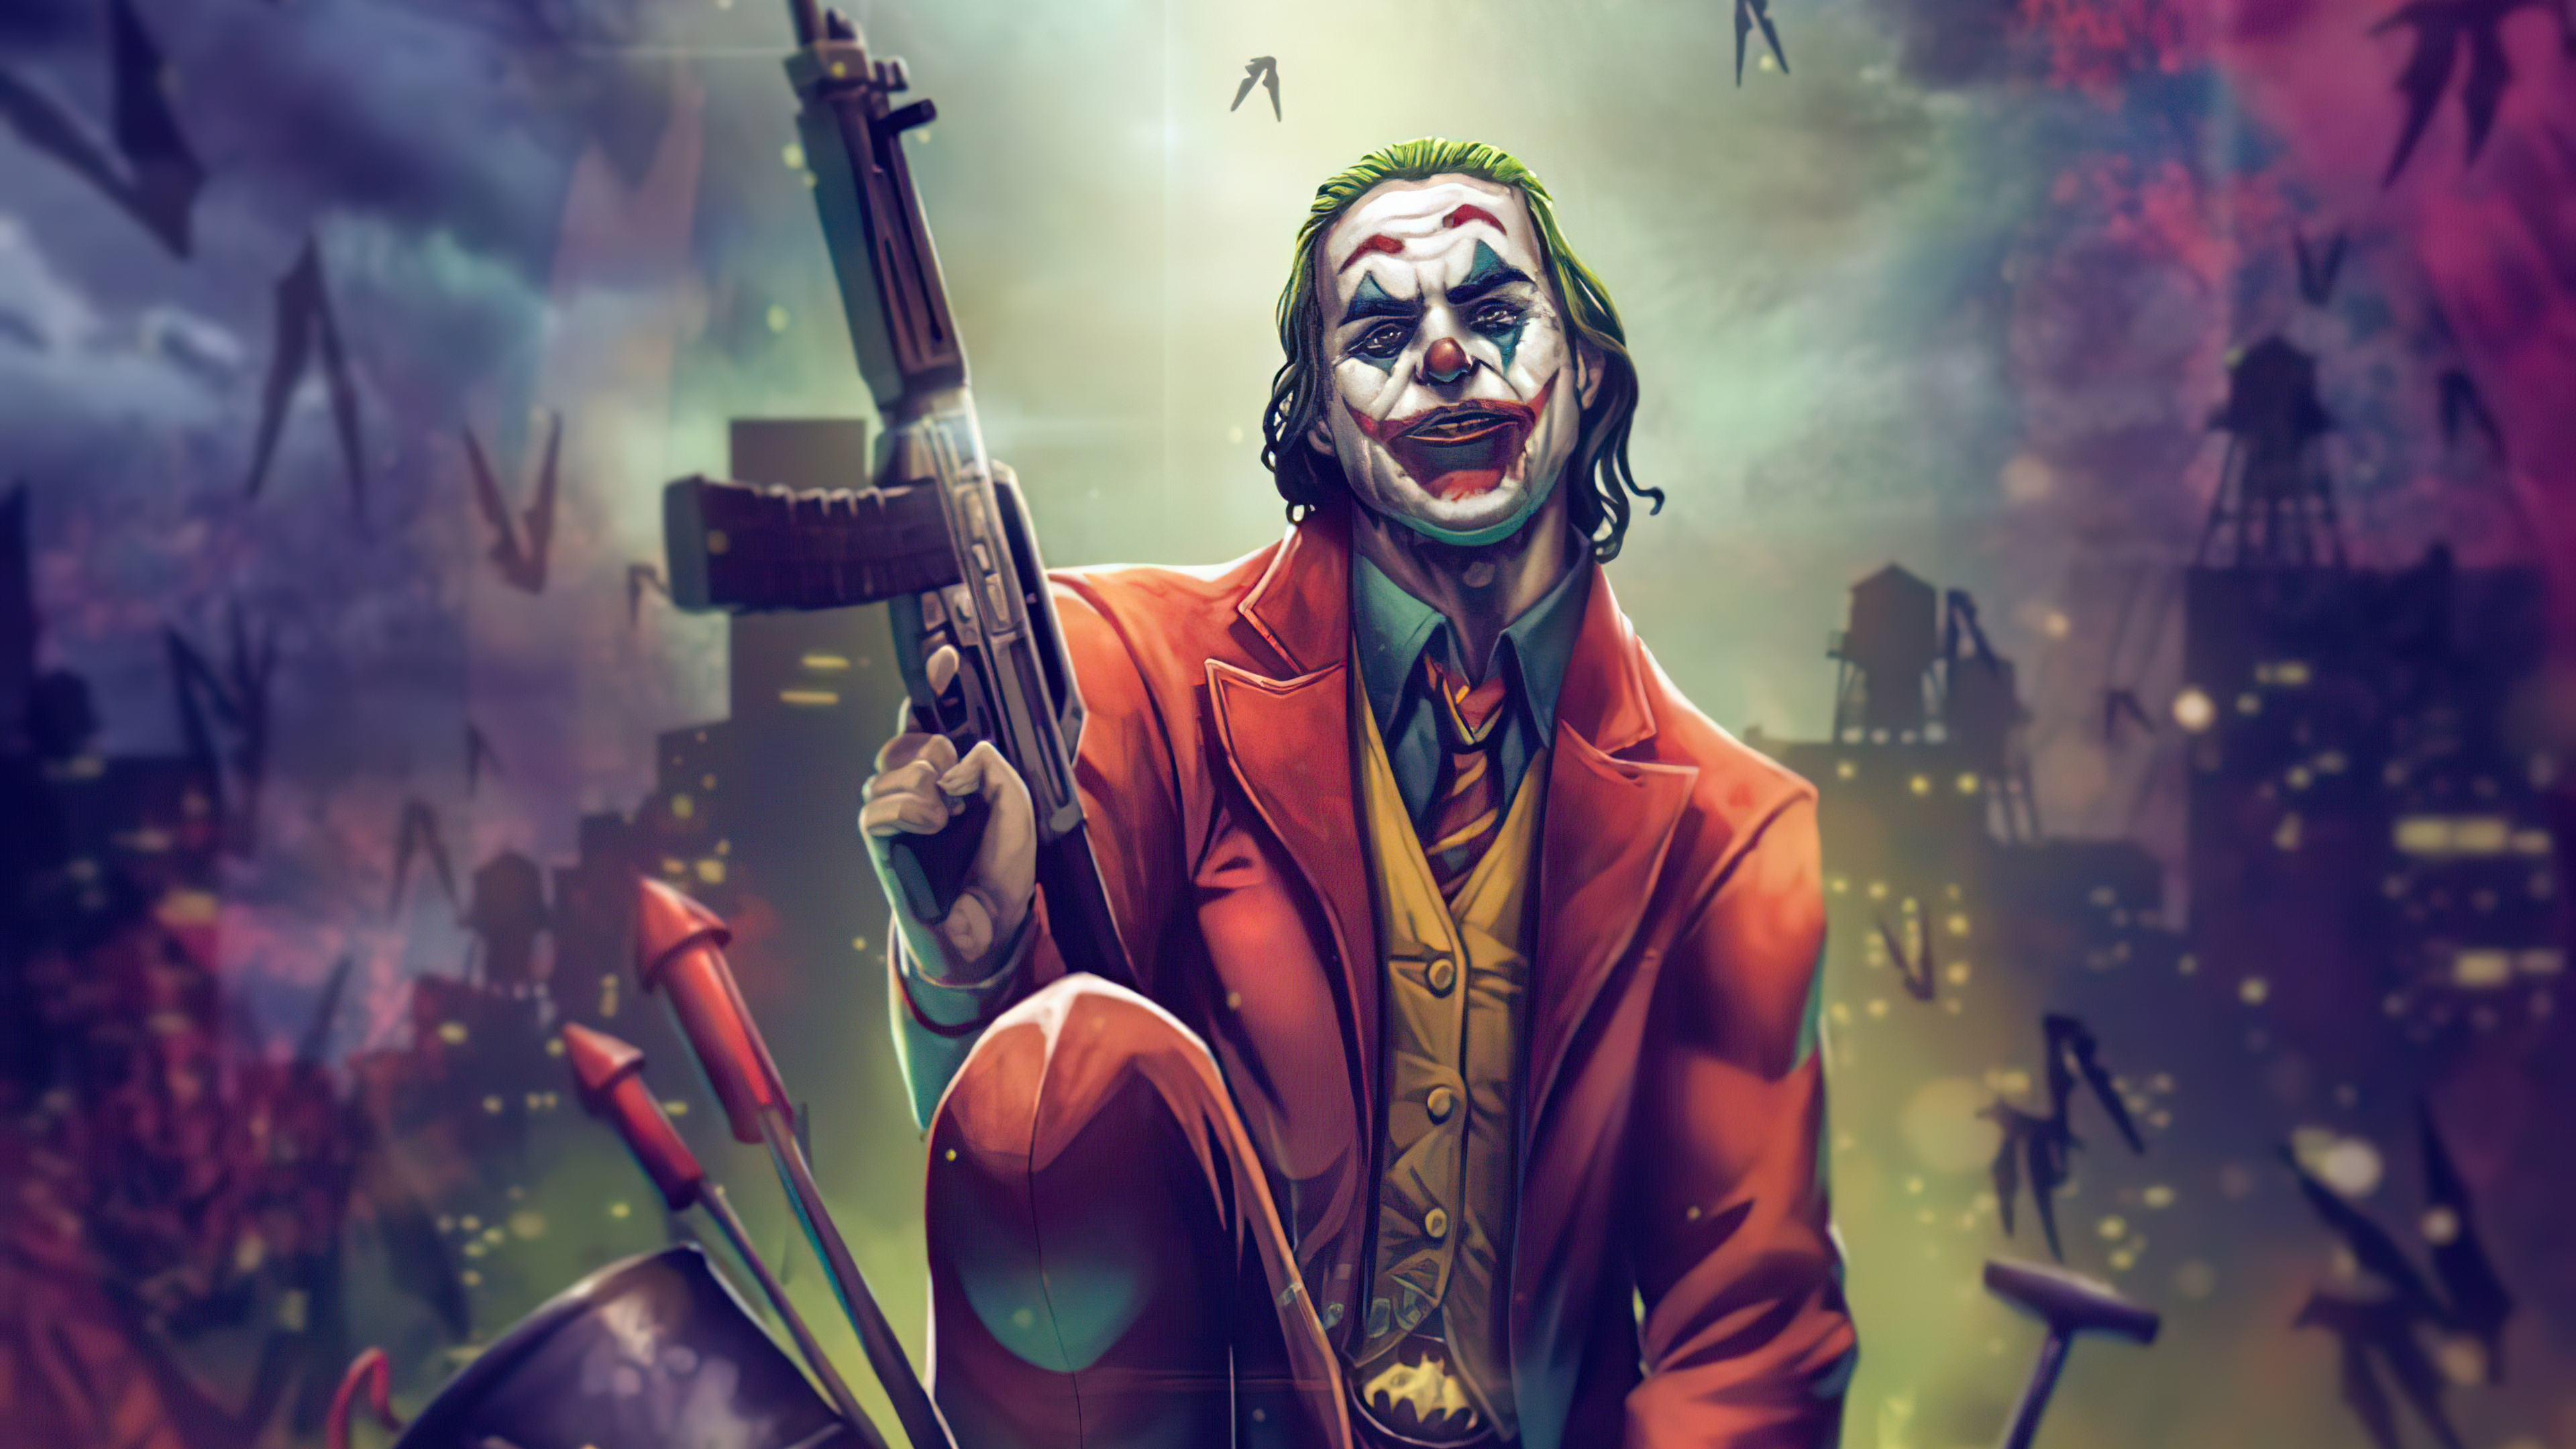 Joker 4k Ultra Hd Wallpaper By Vinz El Tabanas